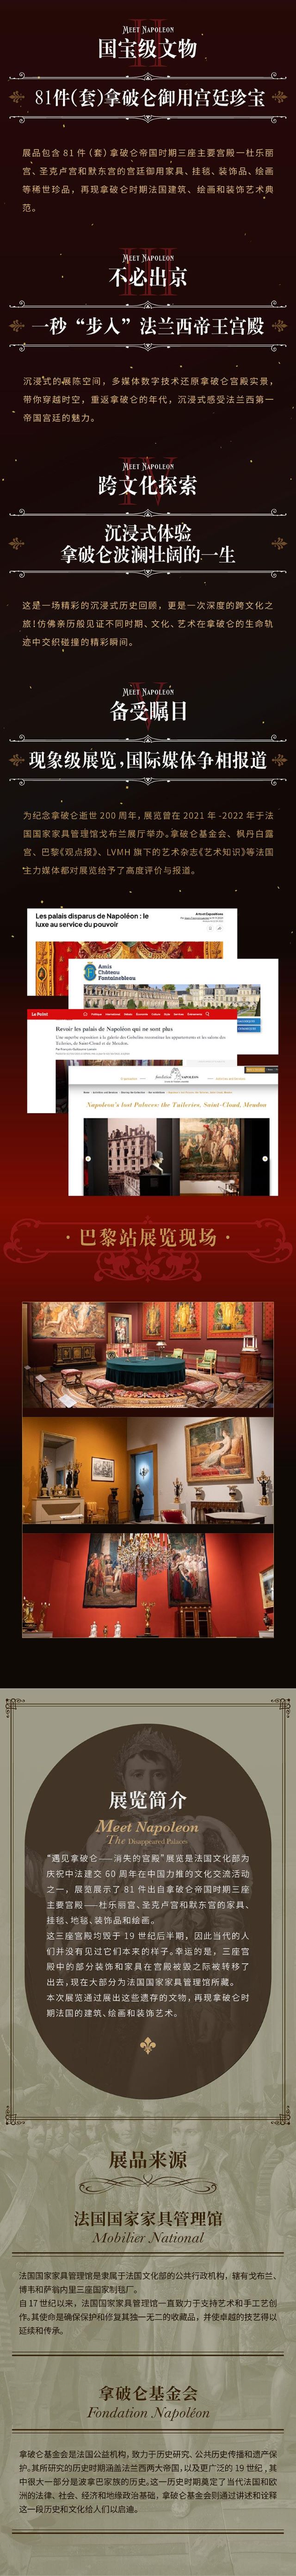 北京遇见拿破仑消失的宫殿2.jpg